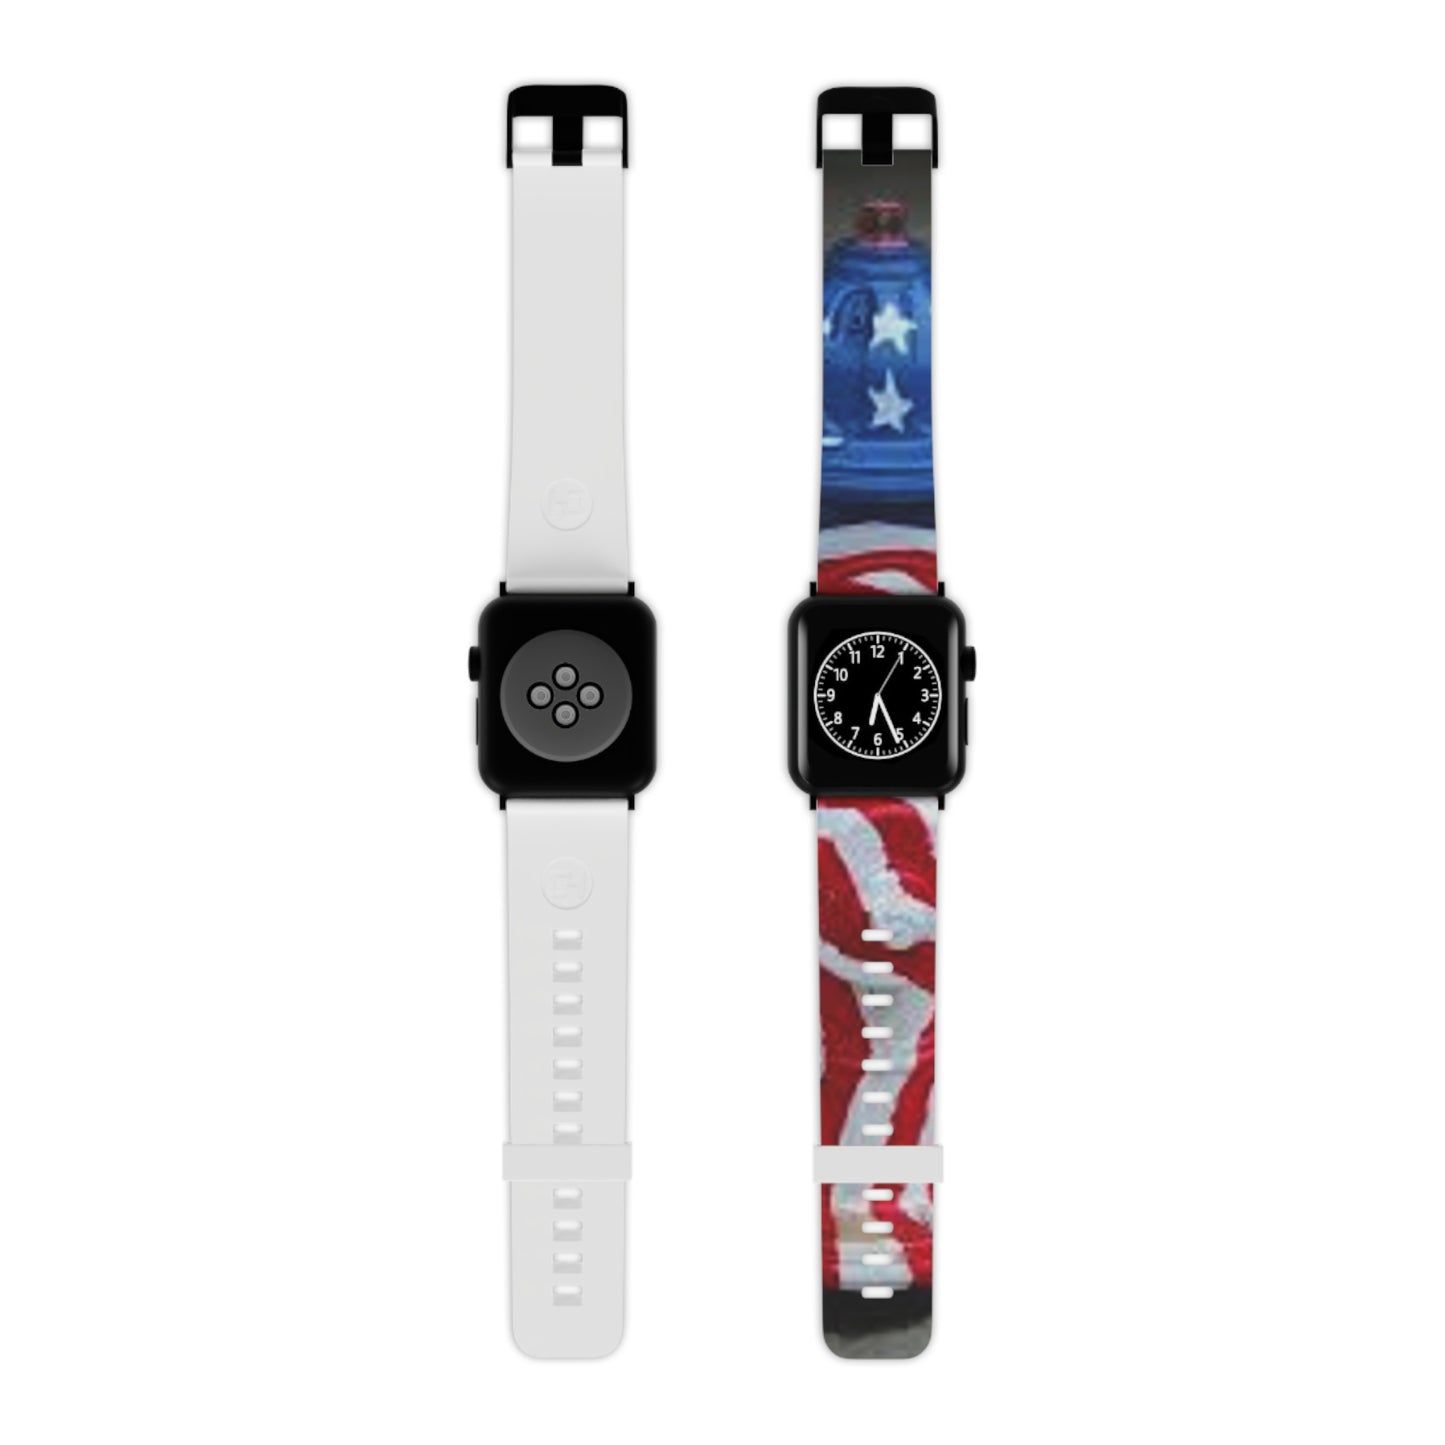 Patriotisches Feuerhydranten-Uhrenarmband für die Apple Watch